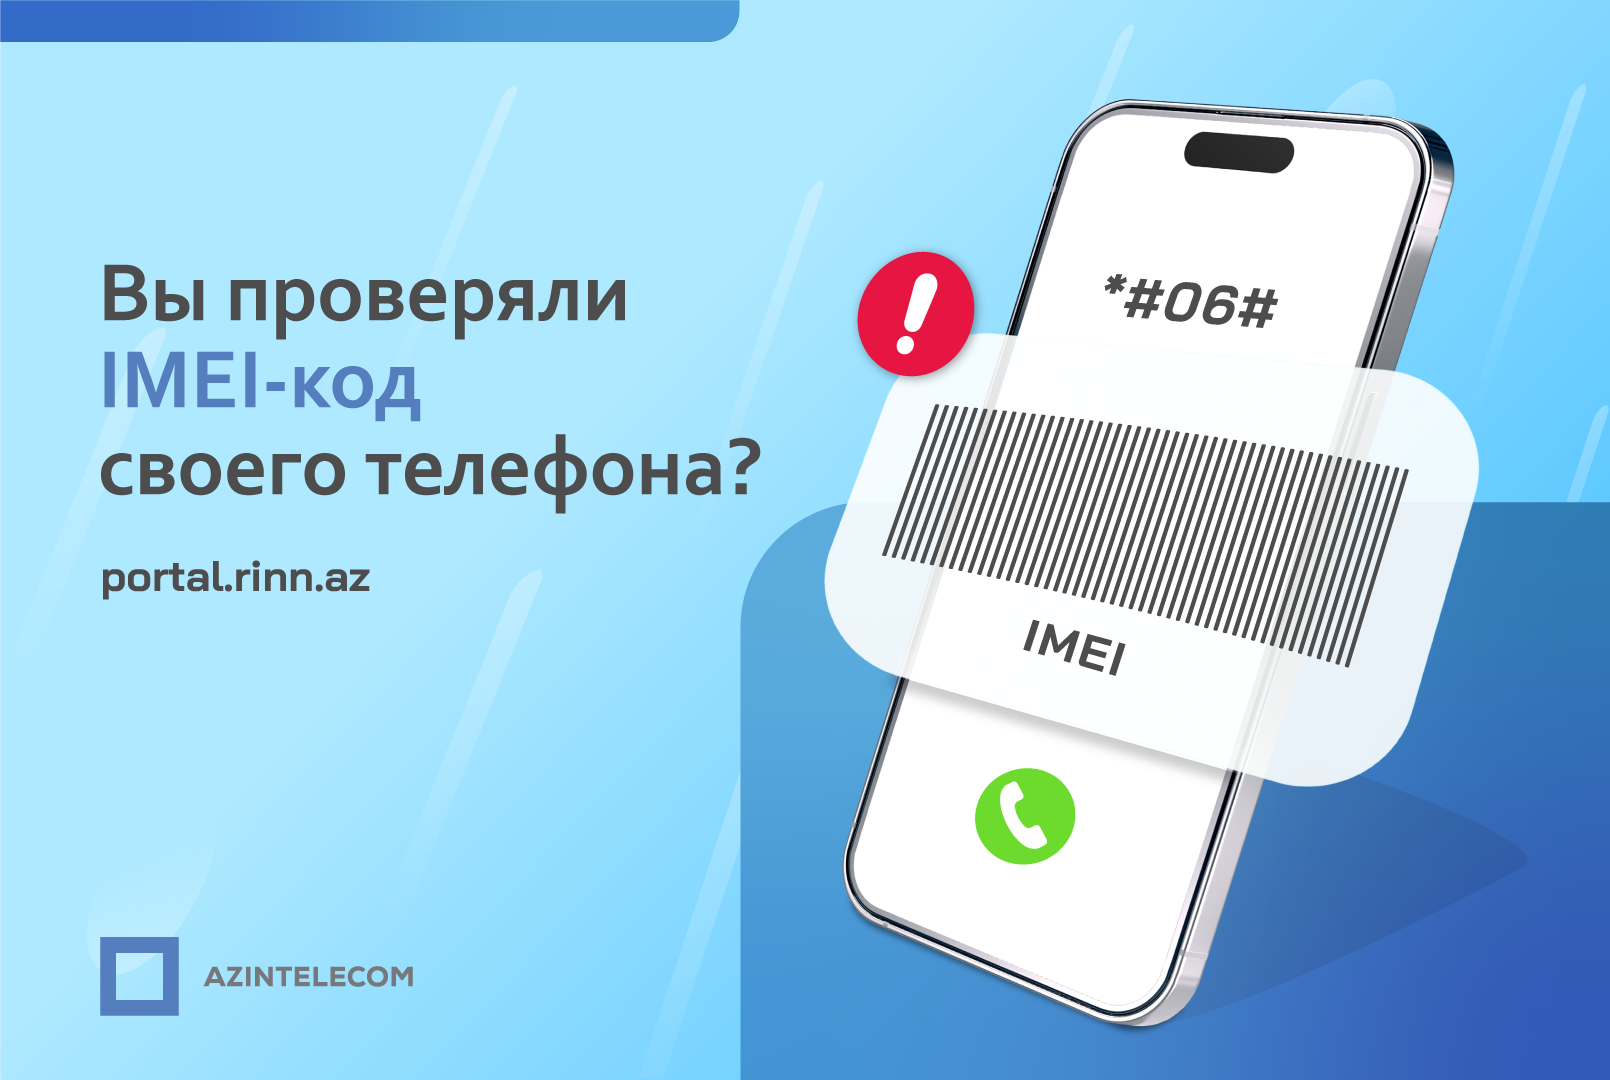 В Азербайджане было 1 005 737 попыток подключения к сети с заблокированными  кодами IMEI - AzInTelecom